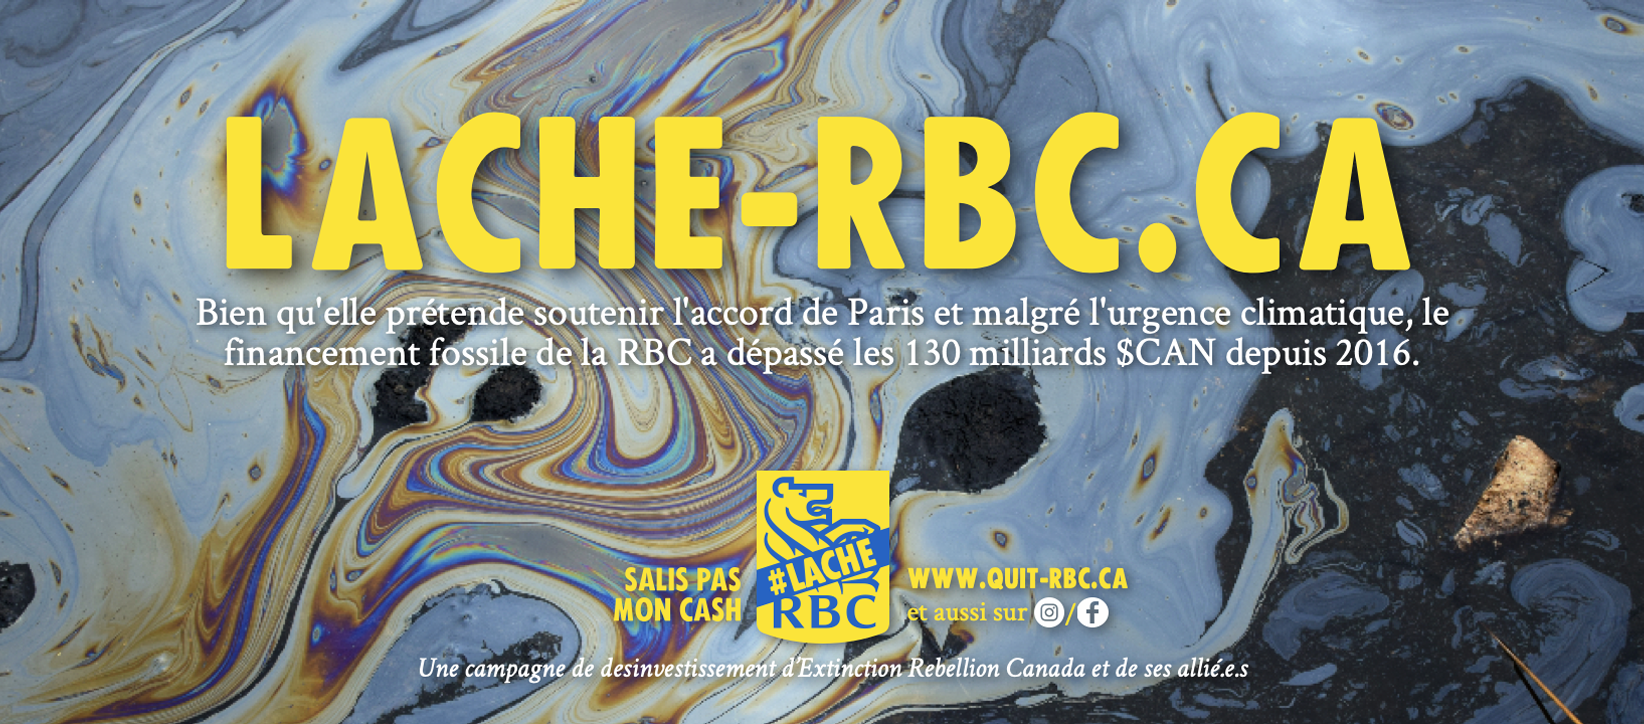 www.quit-rbc.ca